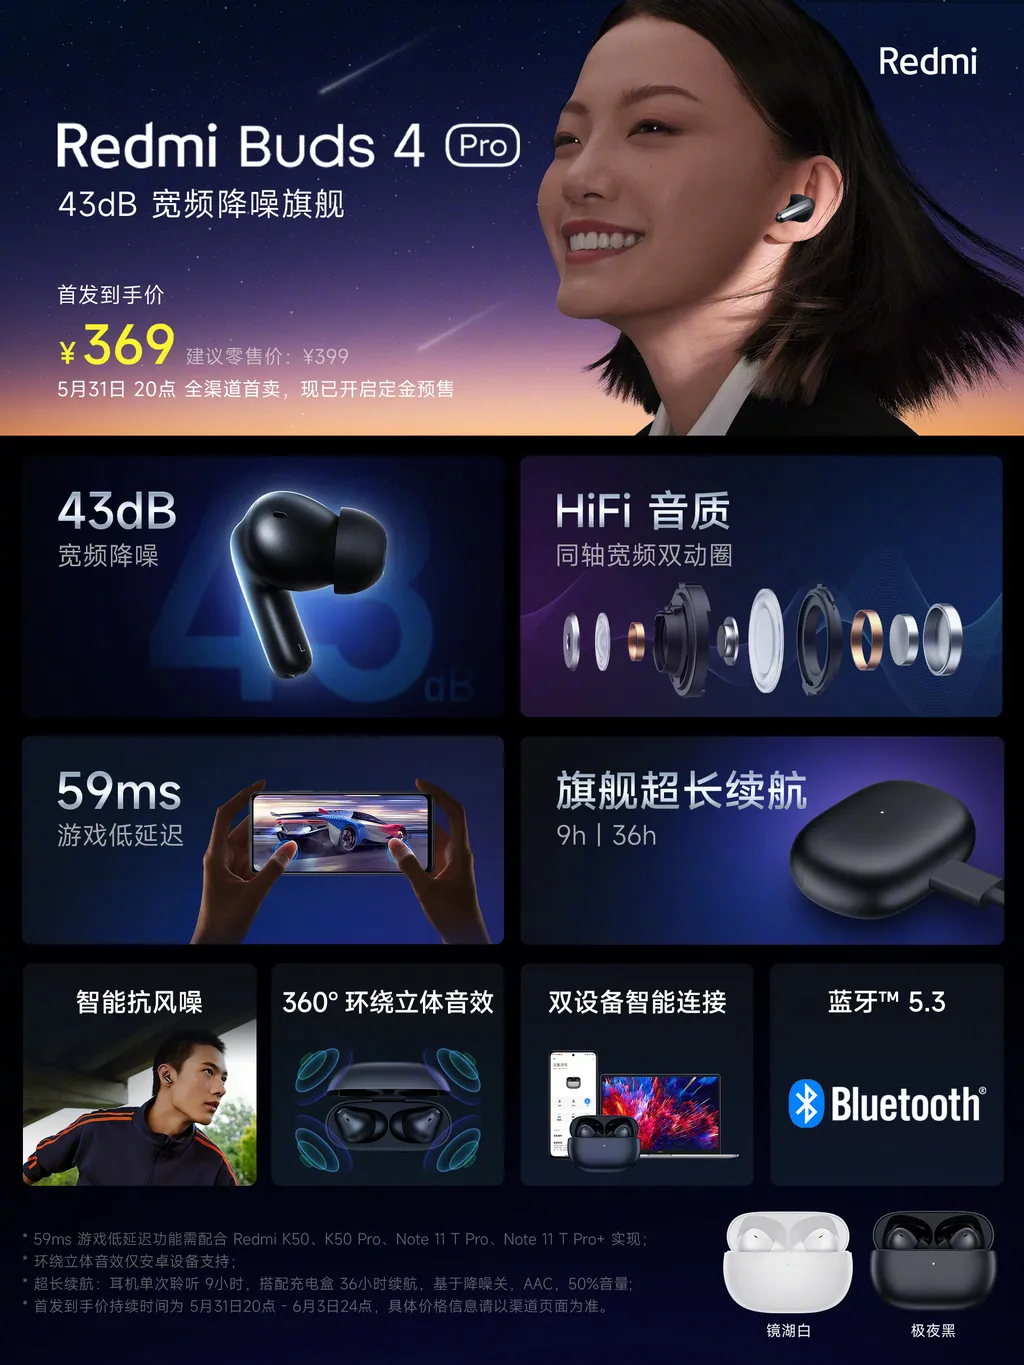 Banner destaca recursos e diferenciais do Redmi Buds 4 Pro com até 36 horas de bateria (Imagem: Reprodução/Xiaomi)